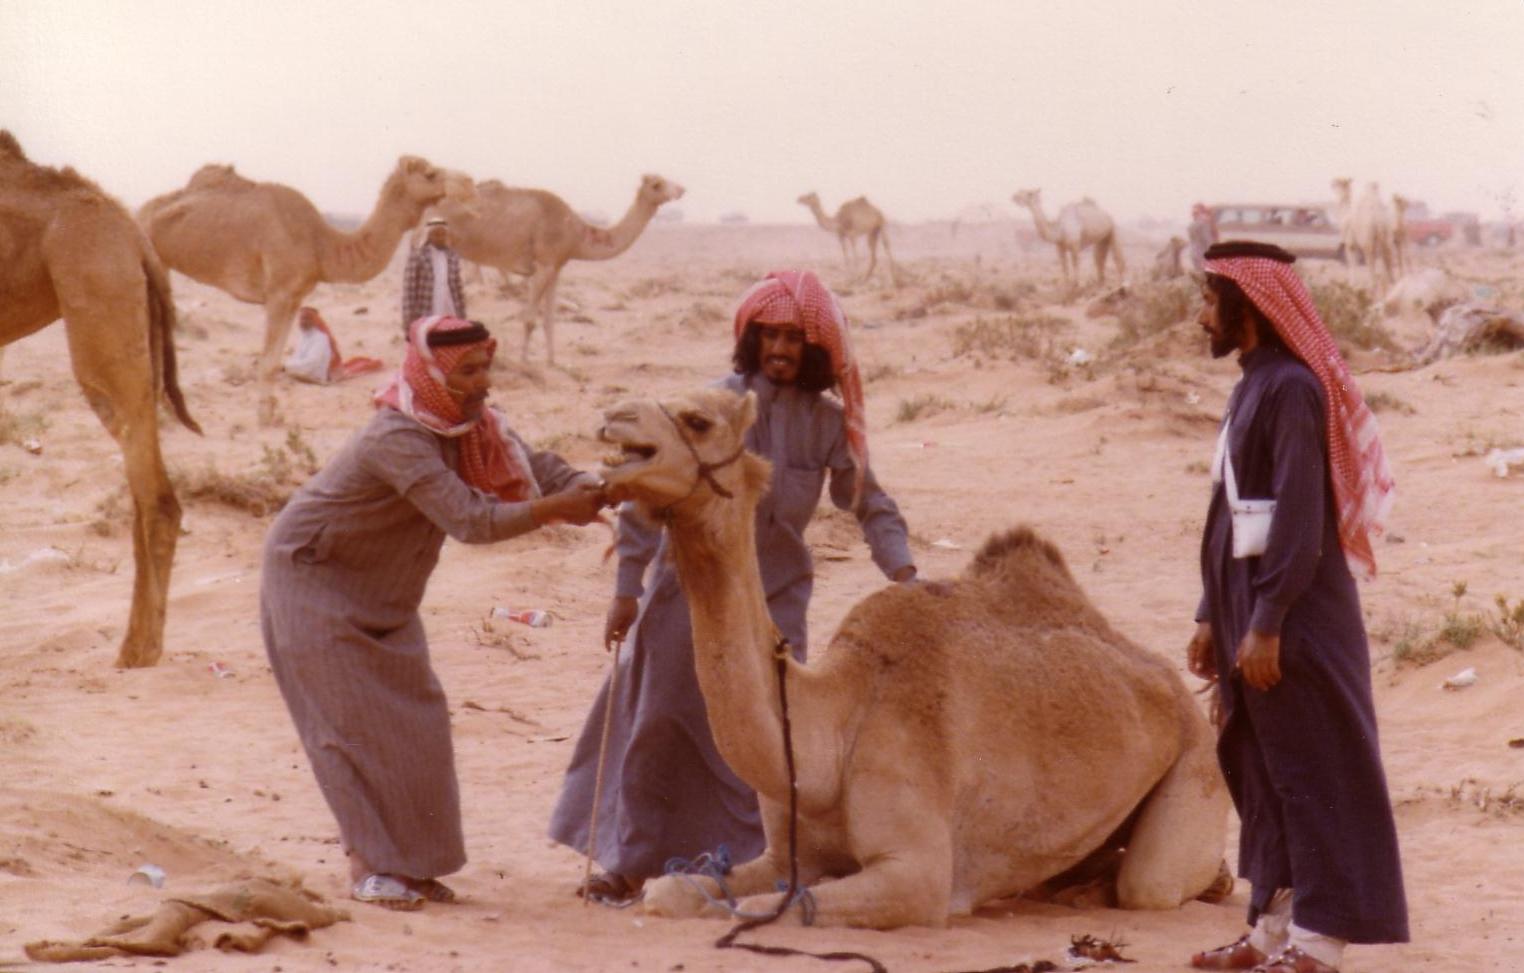 Riyadh camel races